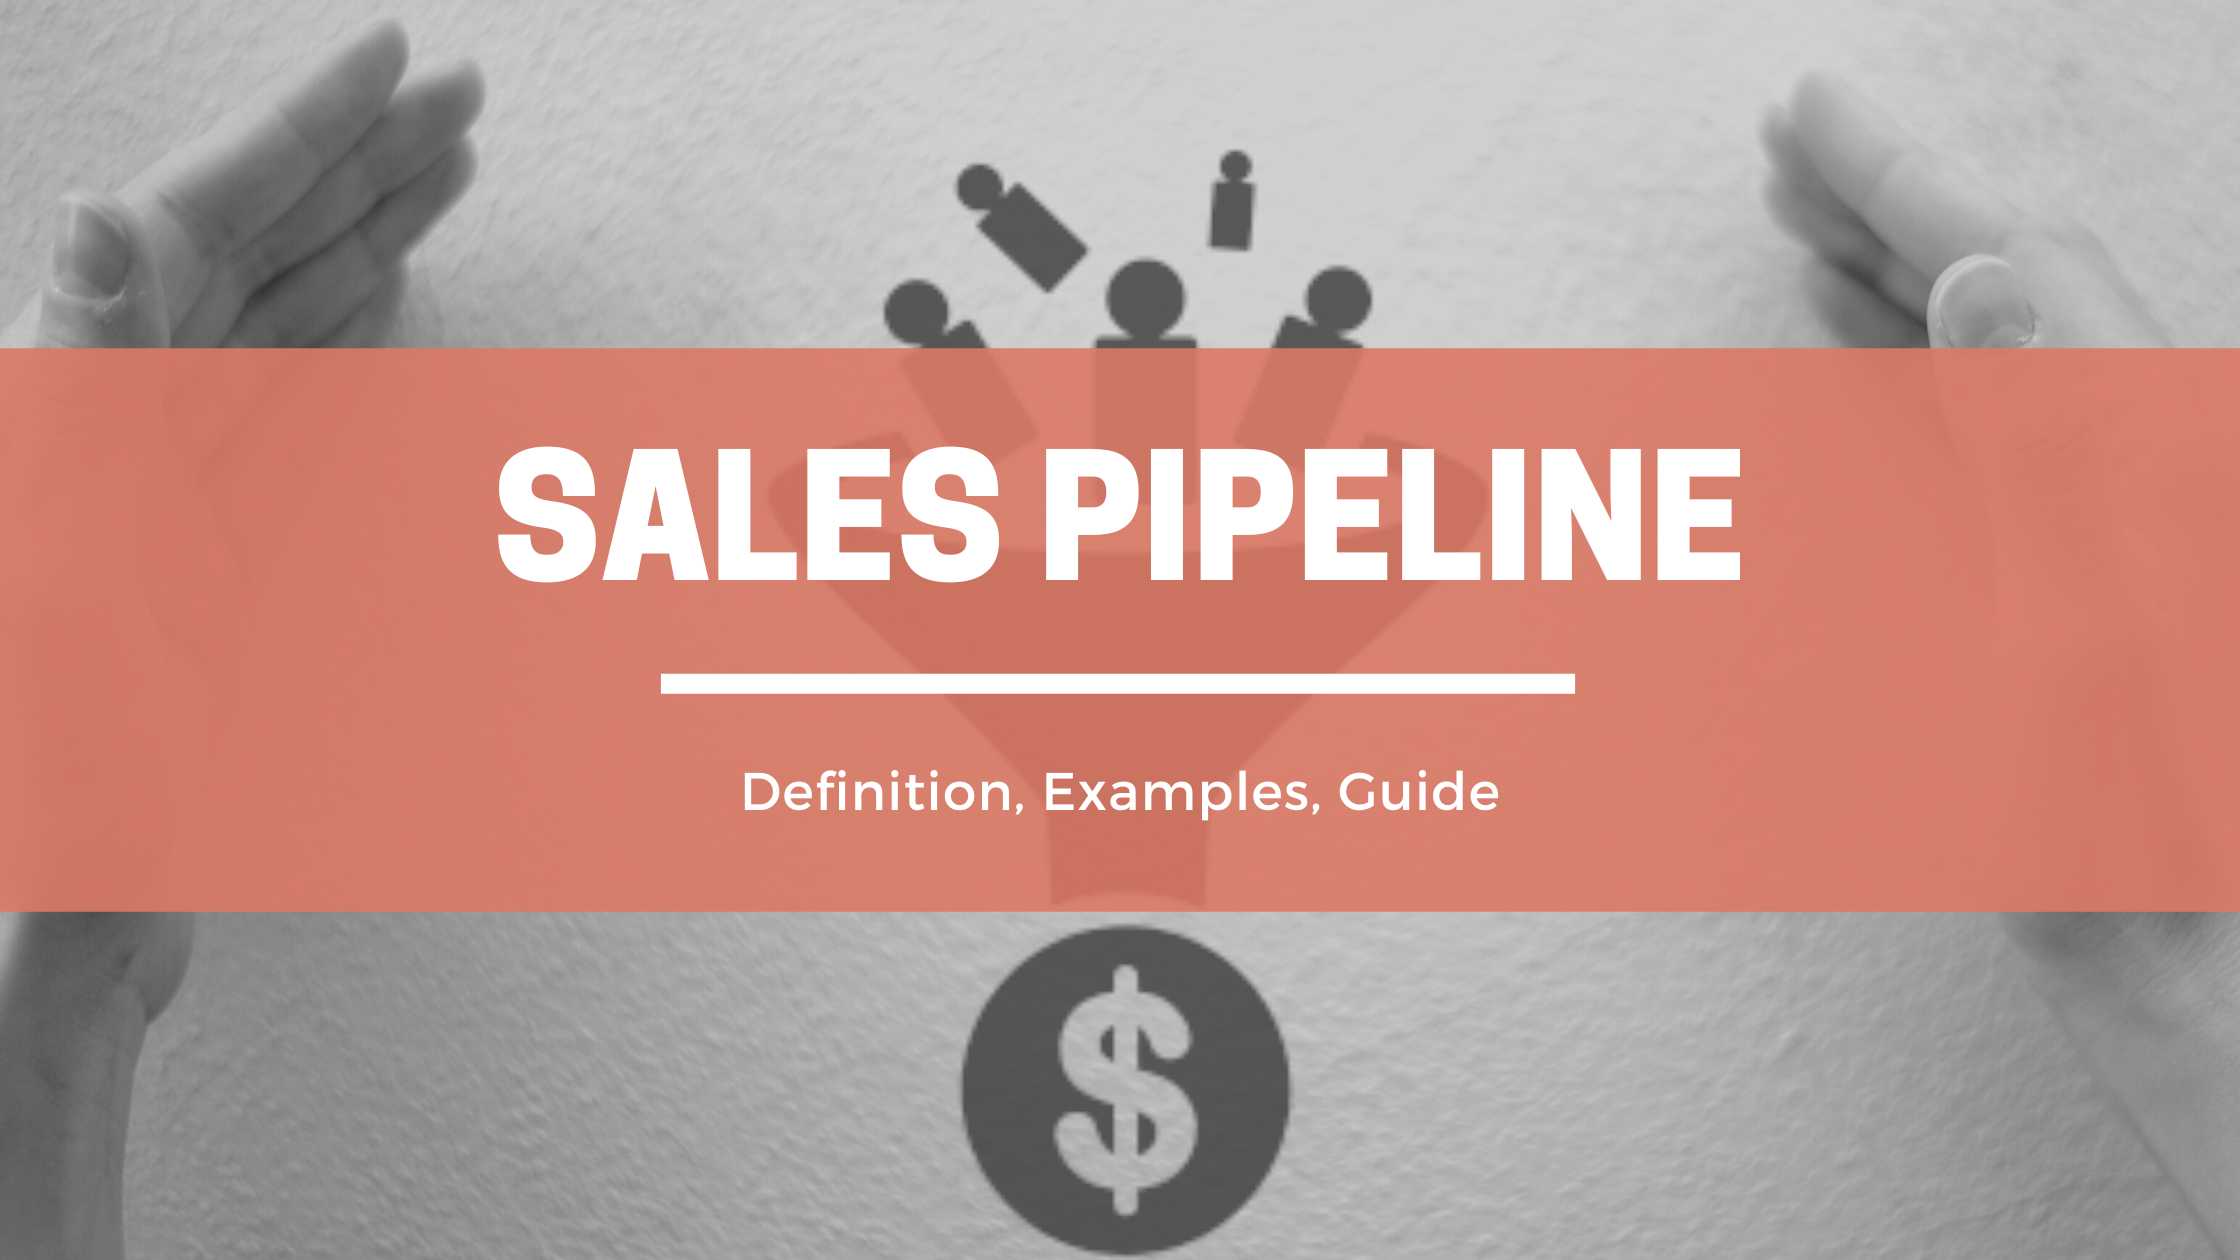 Sales Pipeline header image